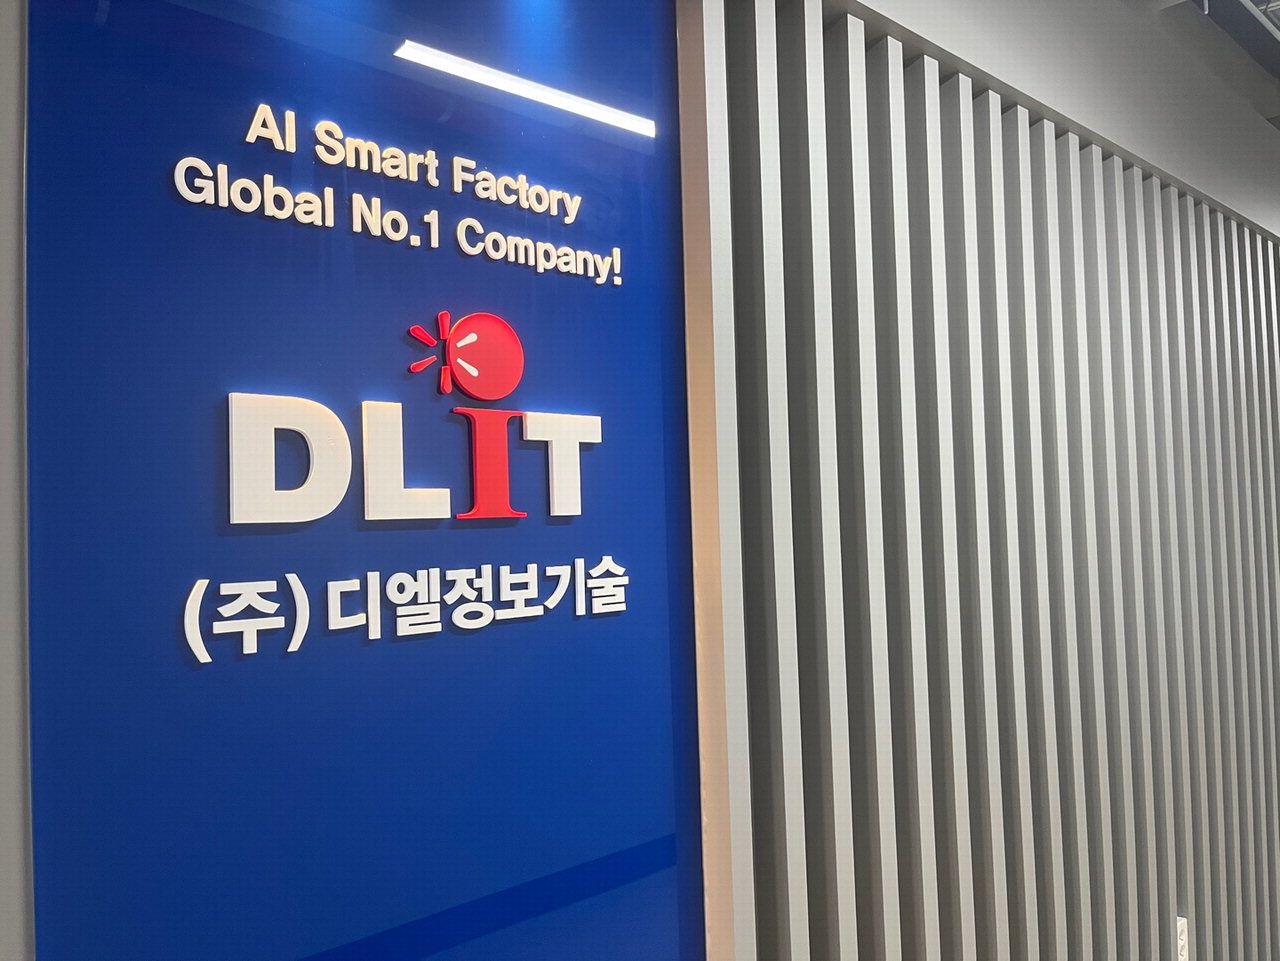 충북 오창에 자리한 ICT기업 디엘정보기술 /박상철